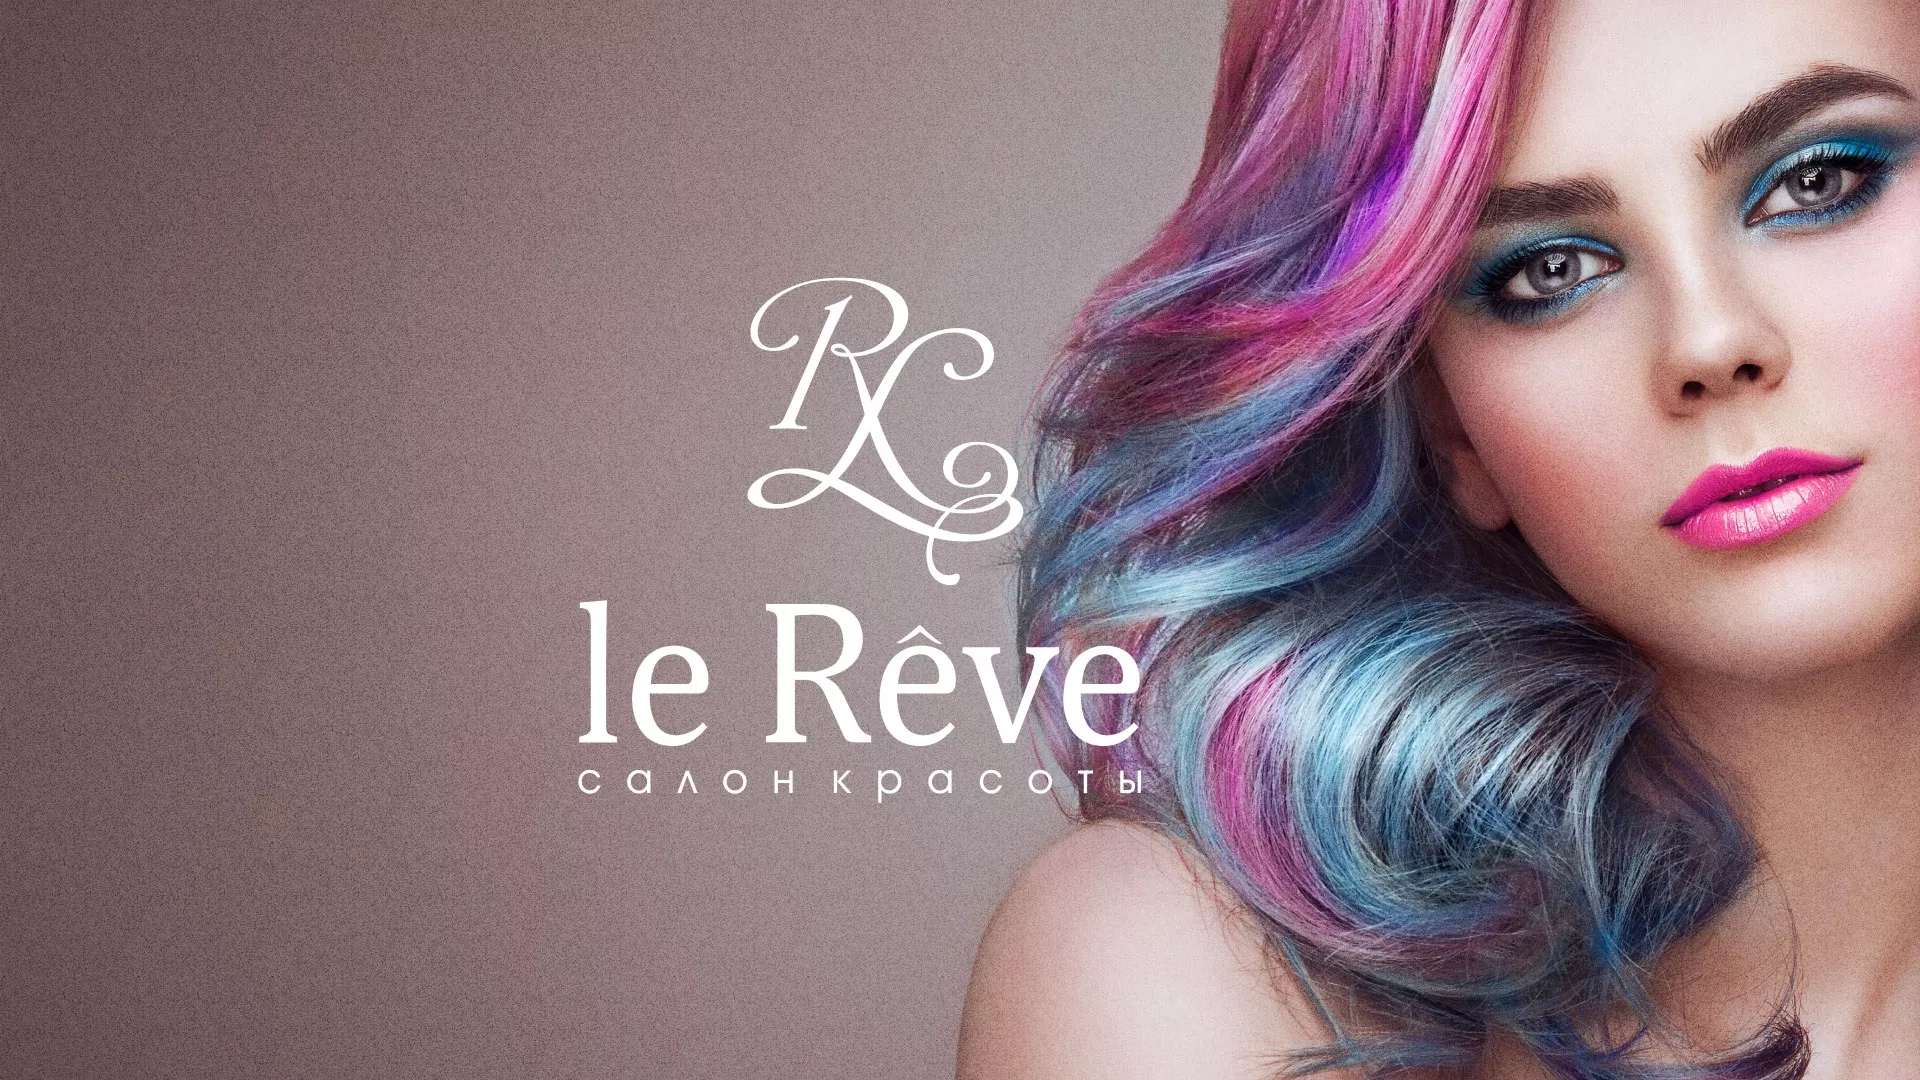 Создание сайта для салона красоты «Le Reve» в Чёрмозе